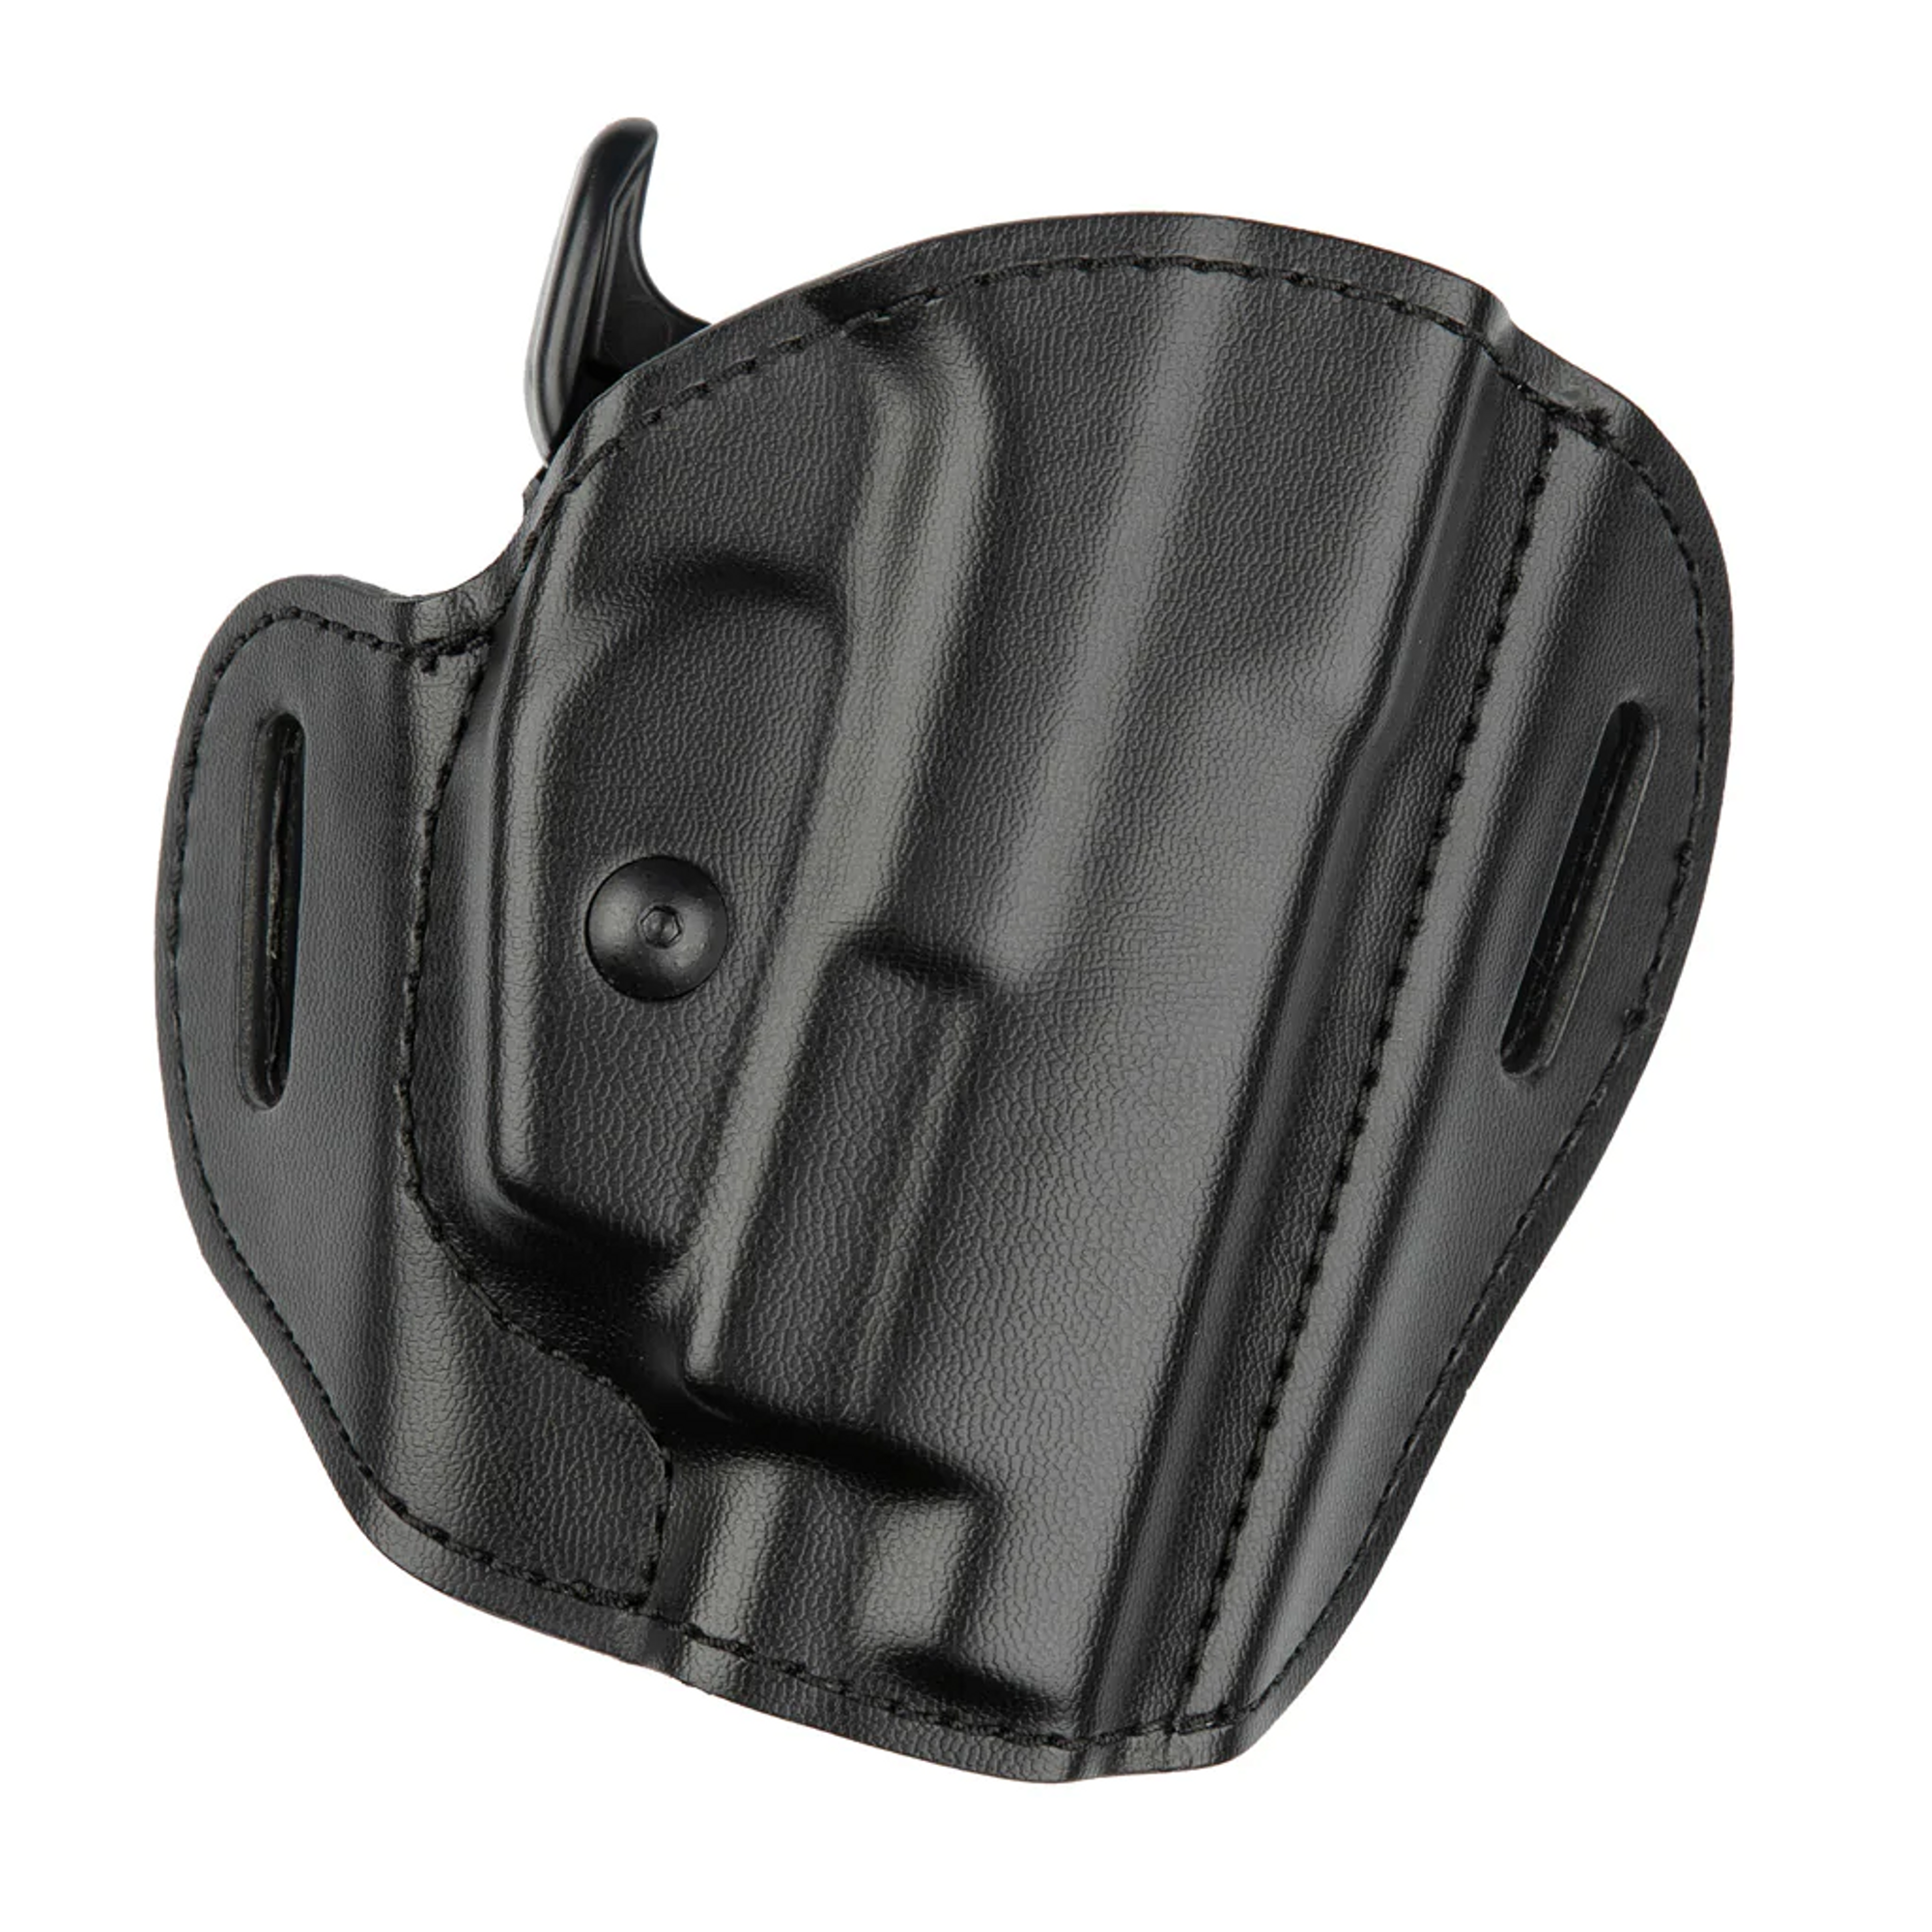 Model 537 Gls Open Top Concealment Belt Slide Holster For Glock 17